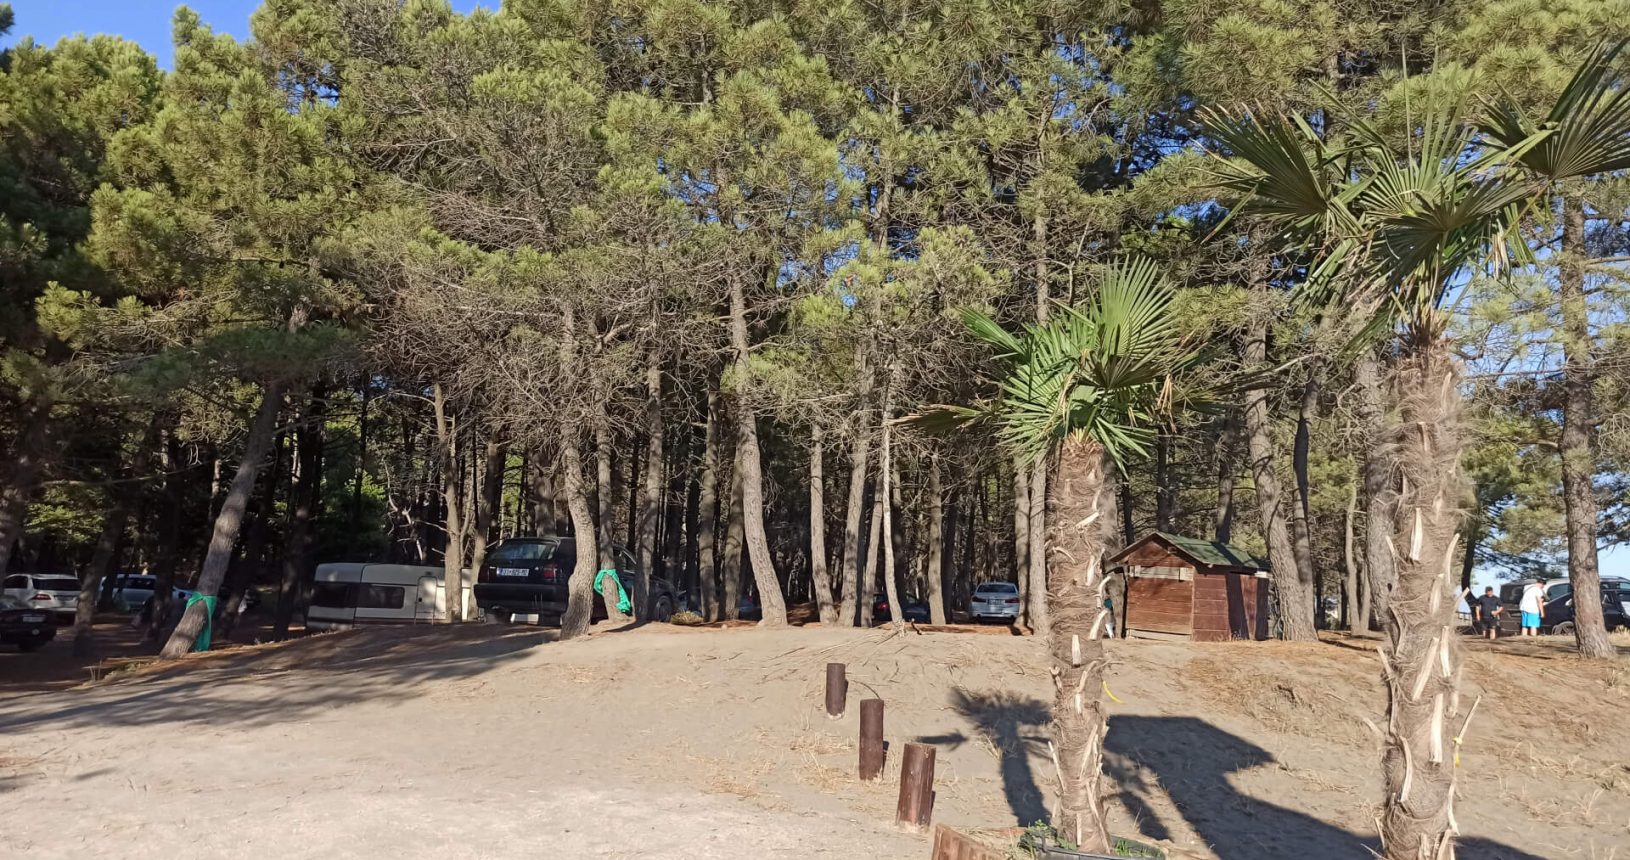 Europa Beach forest parking